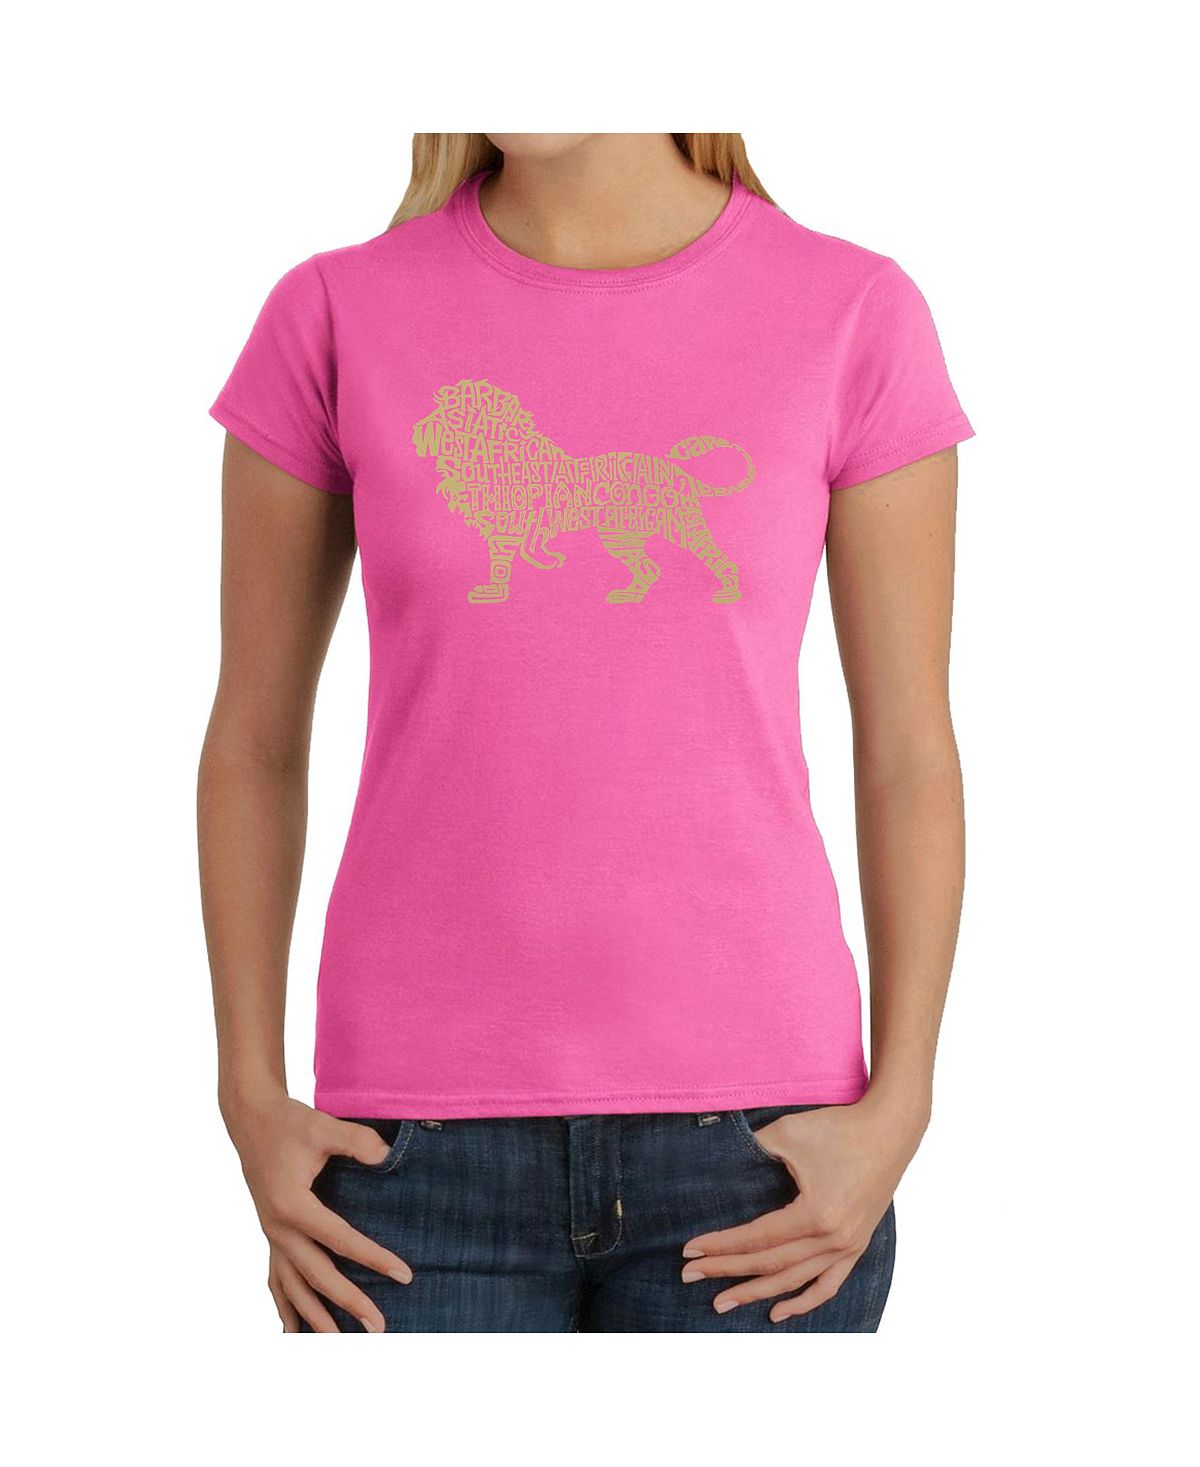 Женская футболка word art - лев LA Pop Art, розовый фото